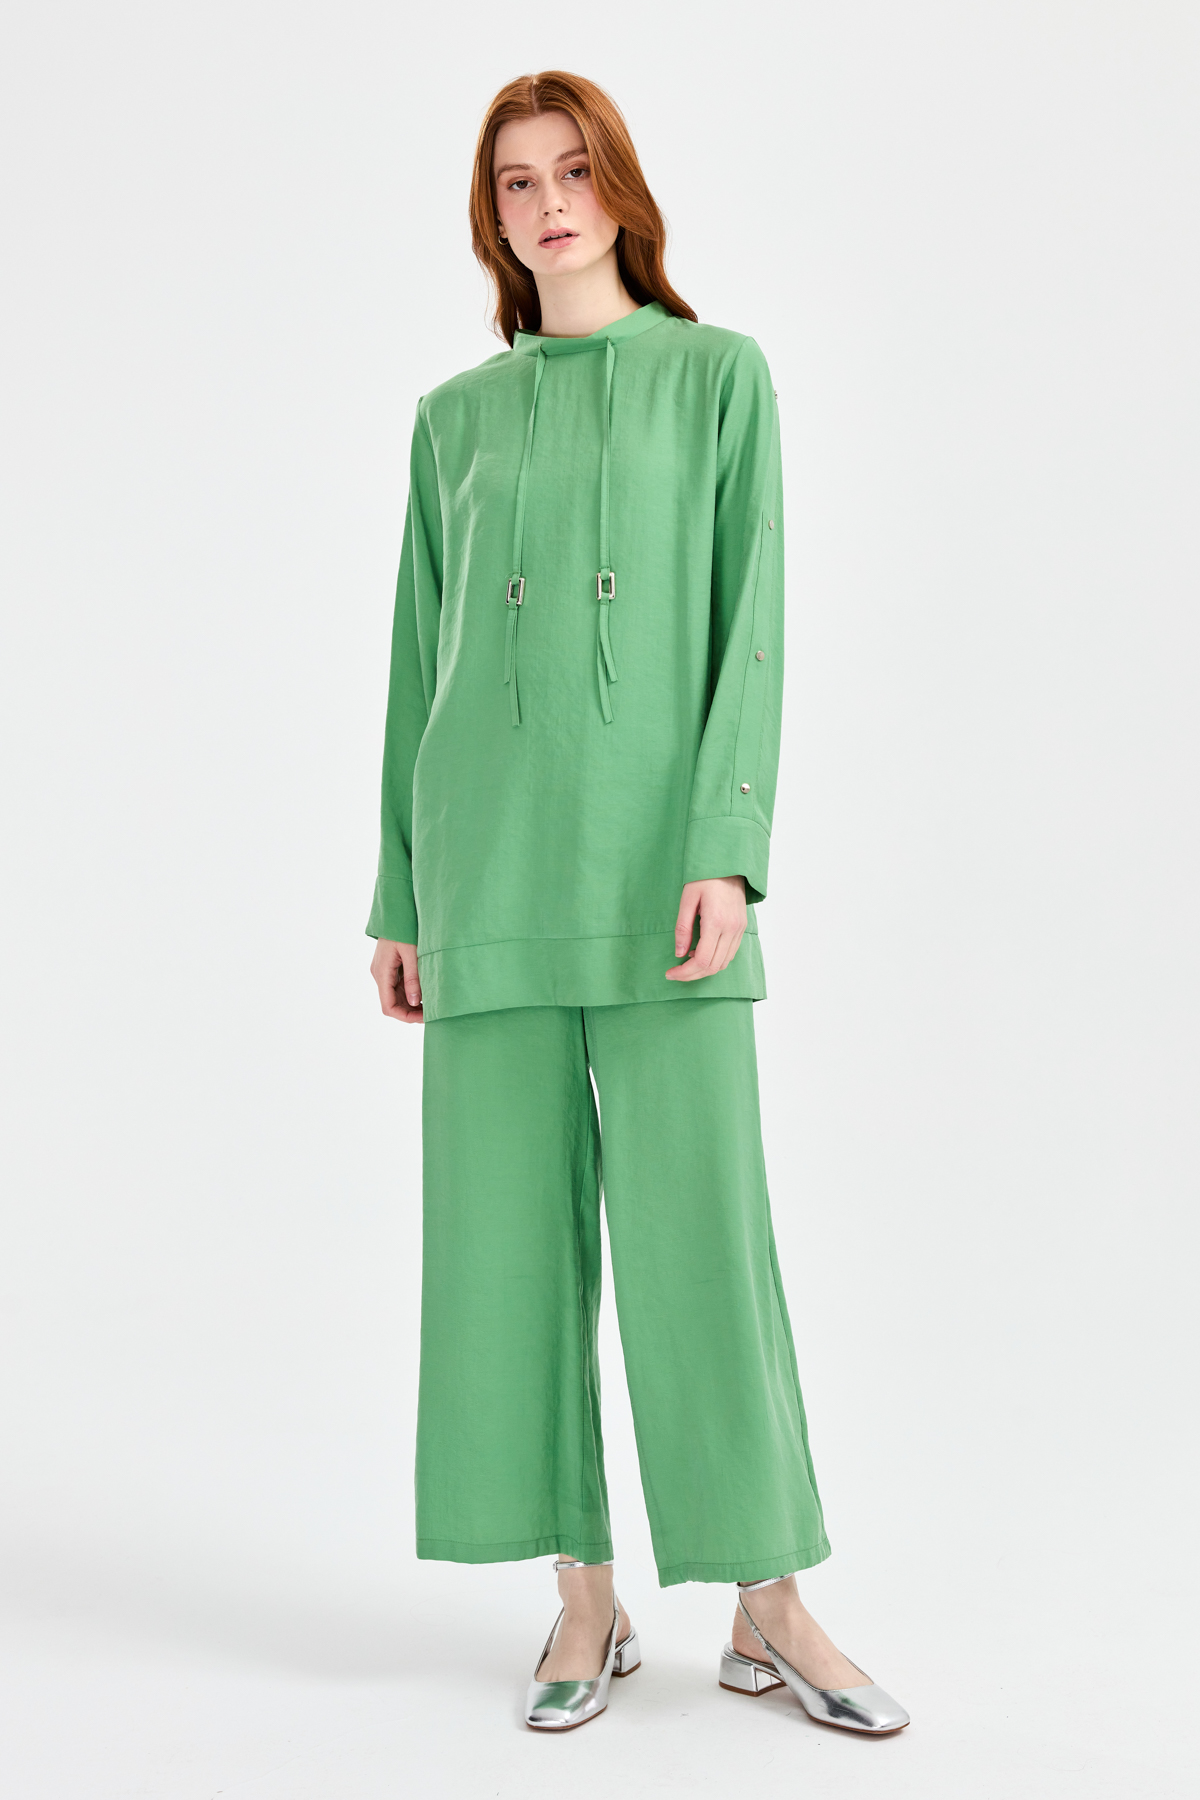 Nihan Kuşgözü Detaylı Pantolon Tunik Takım Benetton Yeşili